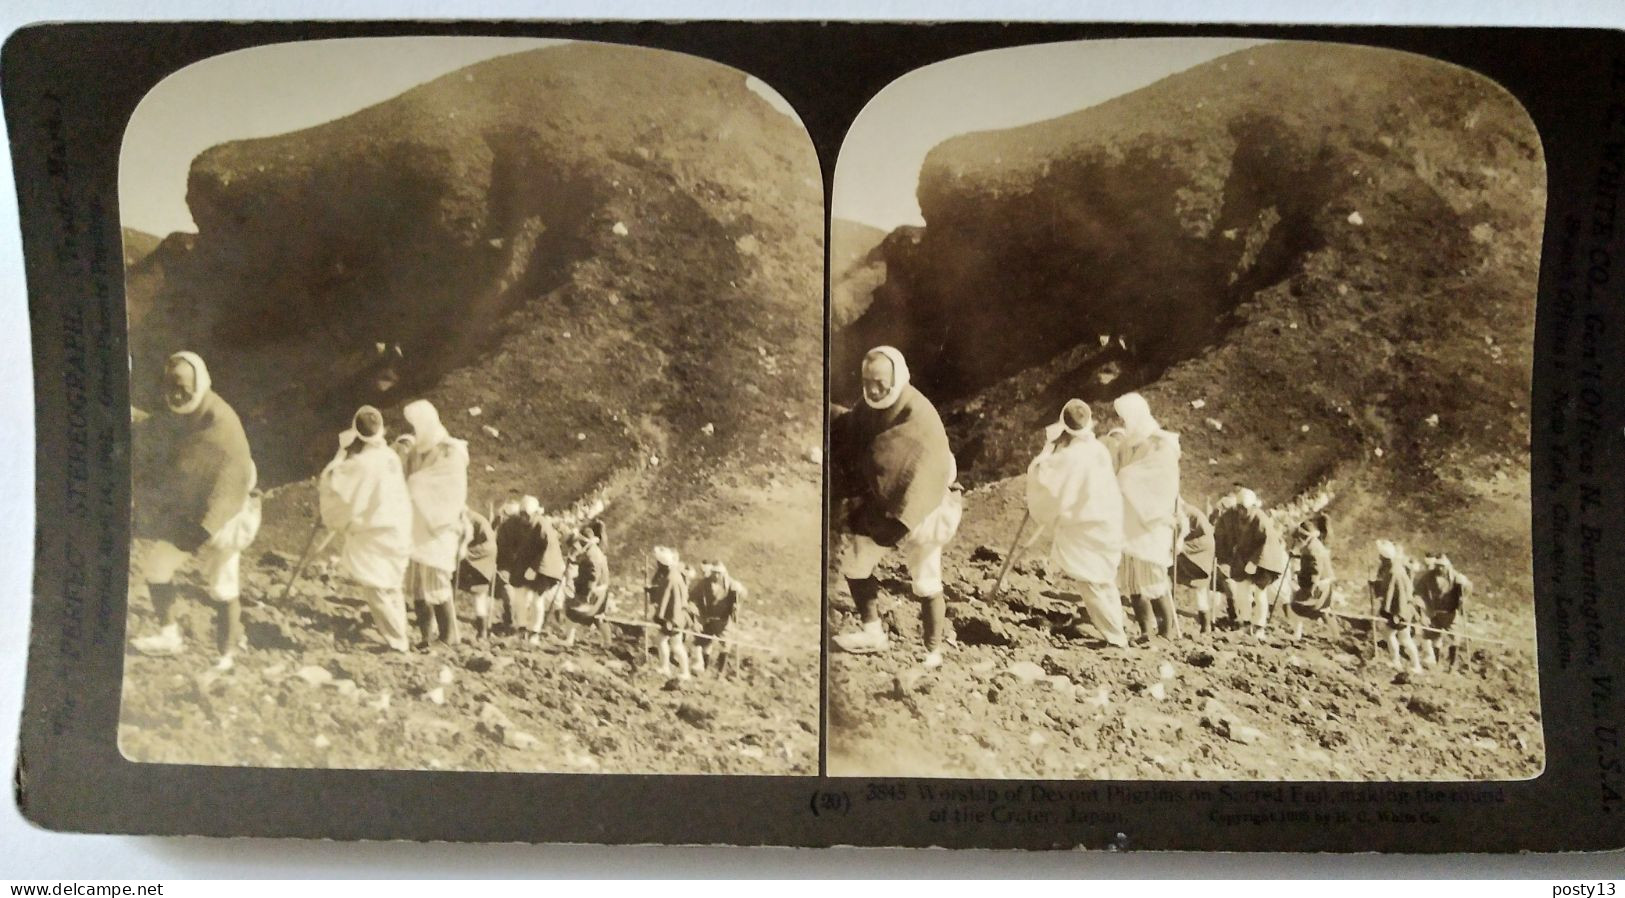 Photographie Stéréoscopique Pèlerins Montant Au Mont Fuji  - 1903 H.C White - TBE - Stereoscopic